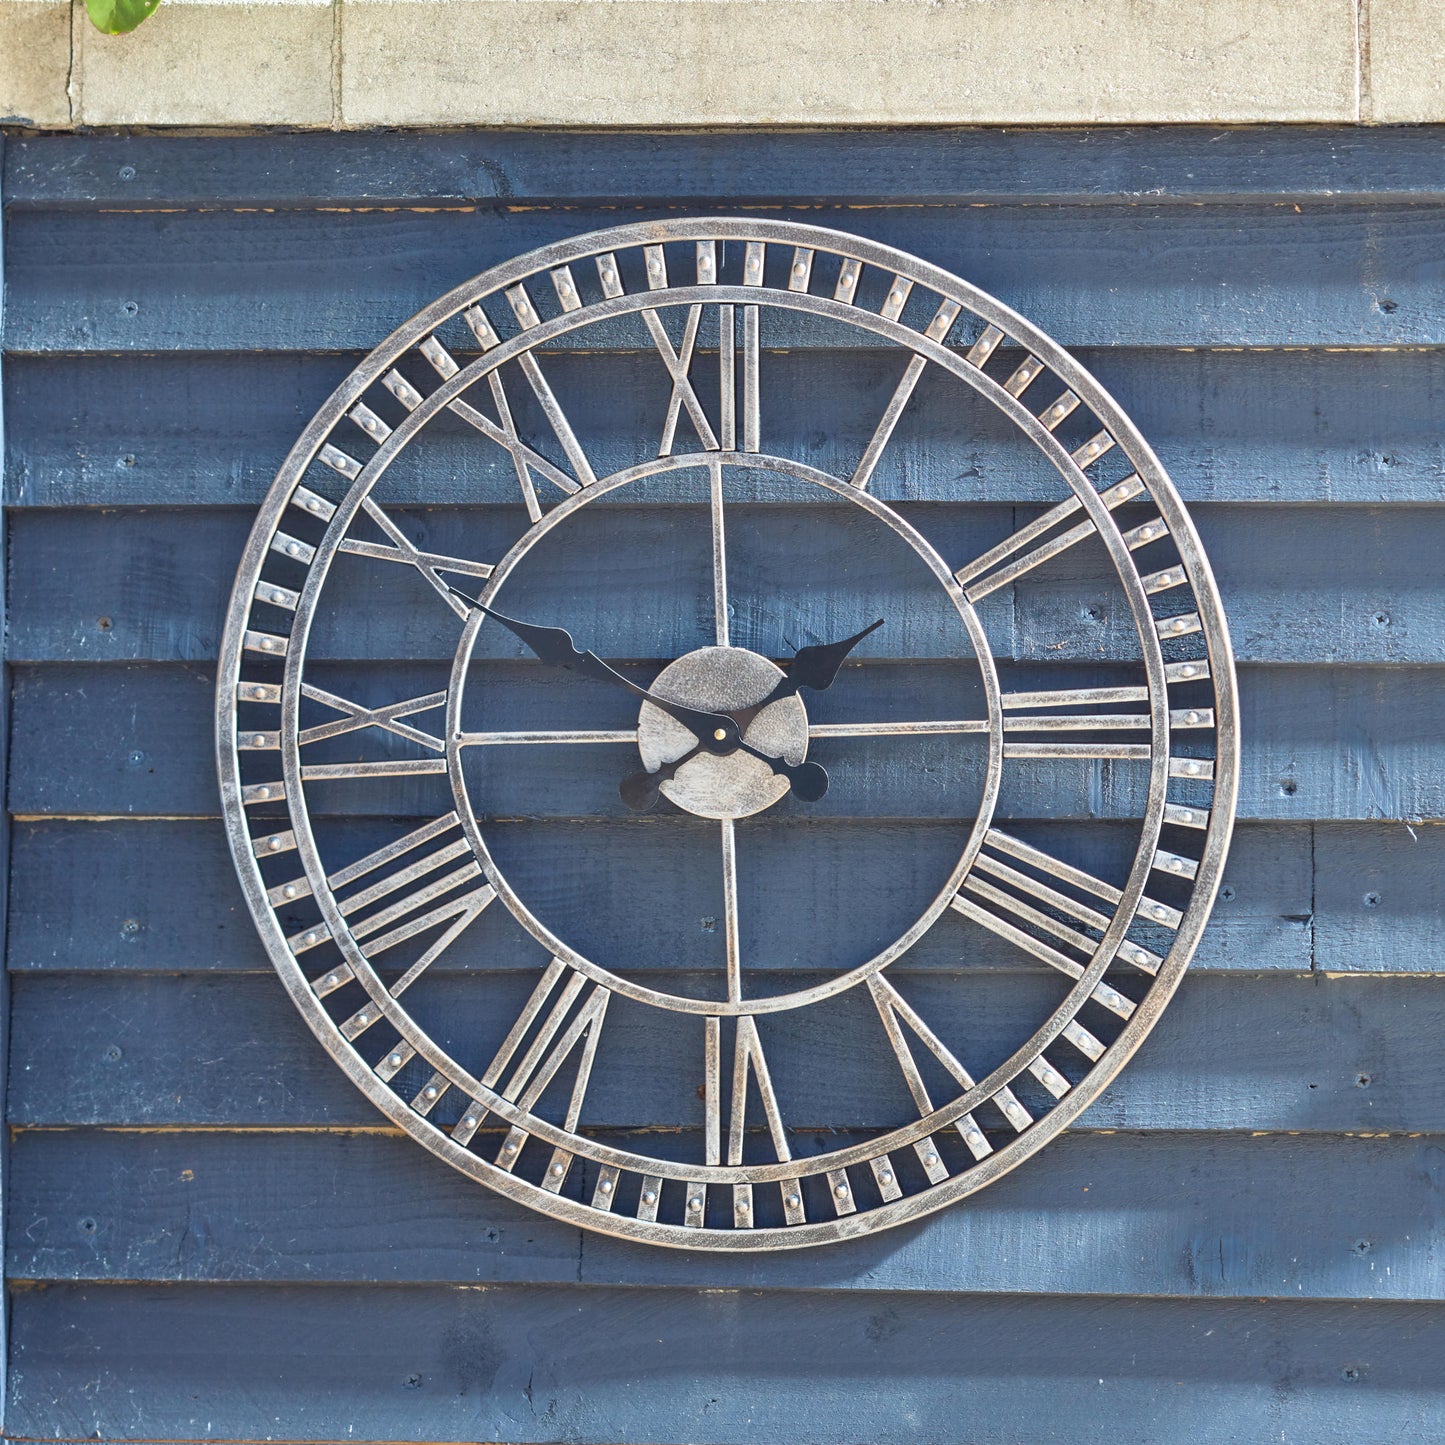 Veľké kovové nástenné hodiny Buxton na drevenej stene v záhrade. Od Outside In designs